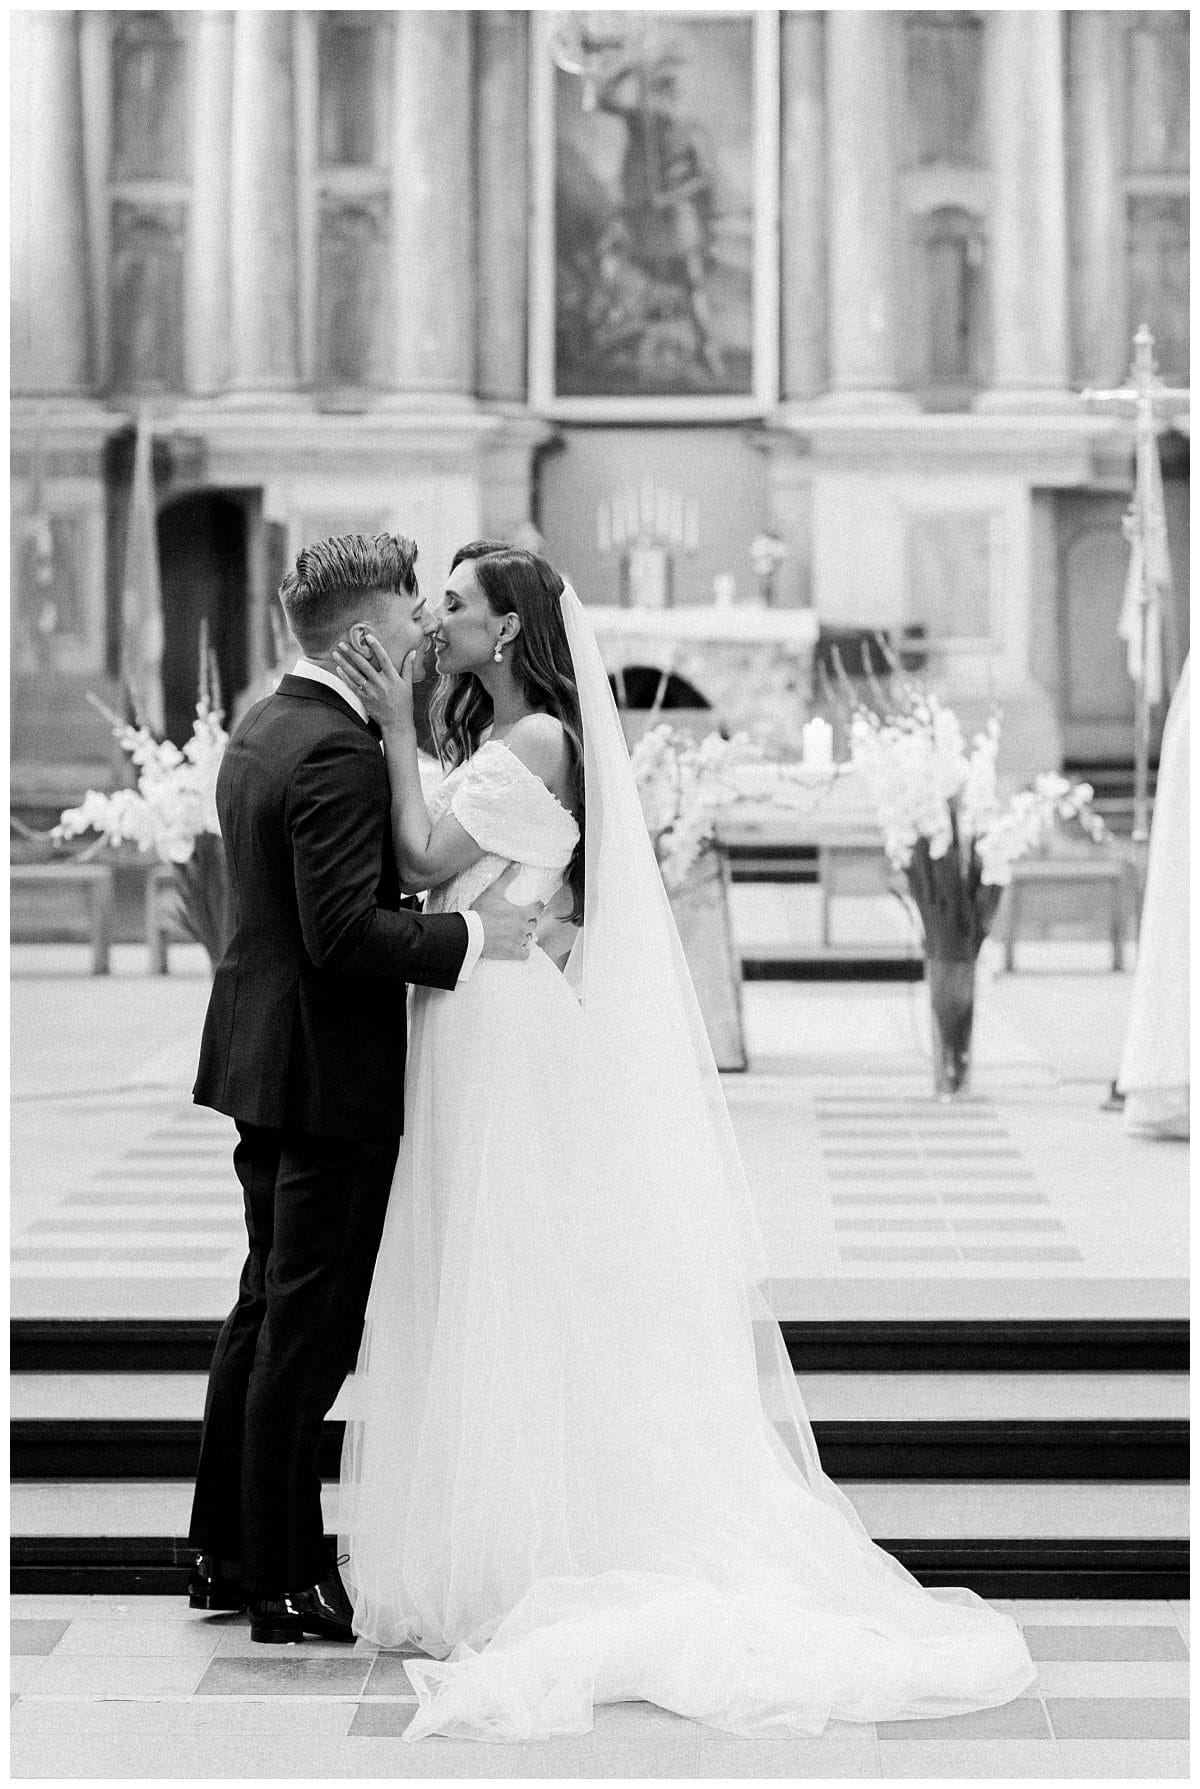 Vestuvių ceremonija iš vestuvių fotografo perspektyvos, Jurgita Lukos Photography, Fine art dokumentinė vestuvių fotografė